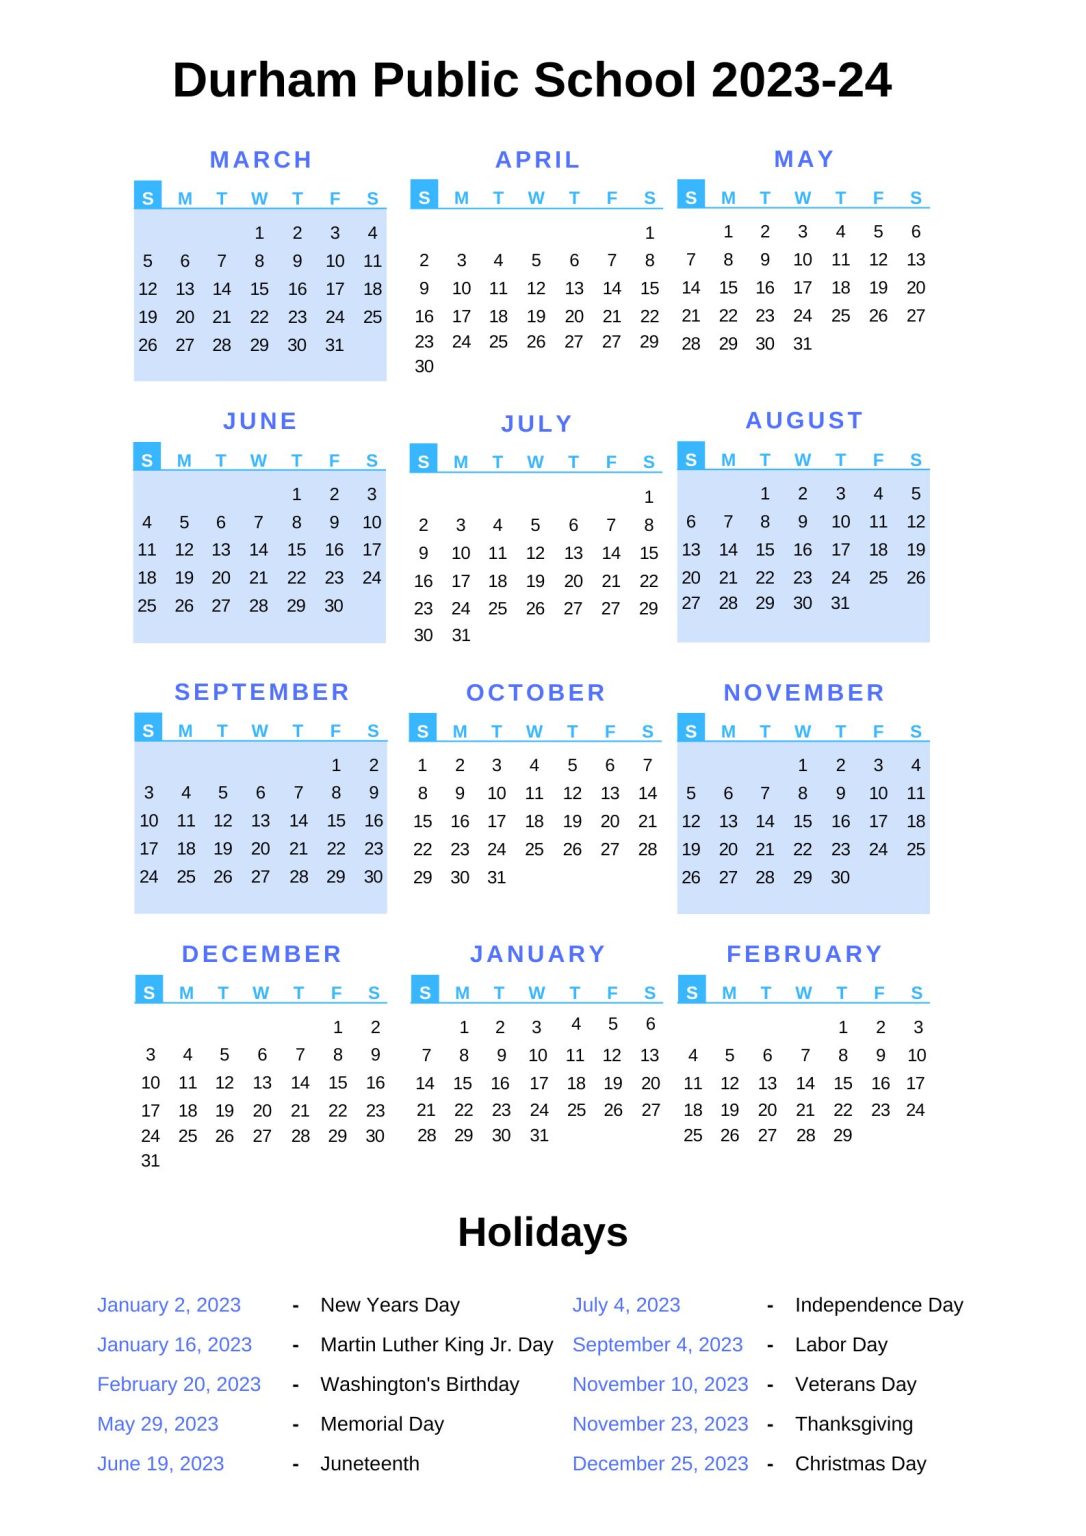 Durham Public Schools Calendar 202324 With Holidays